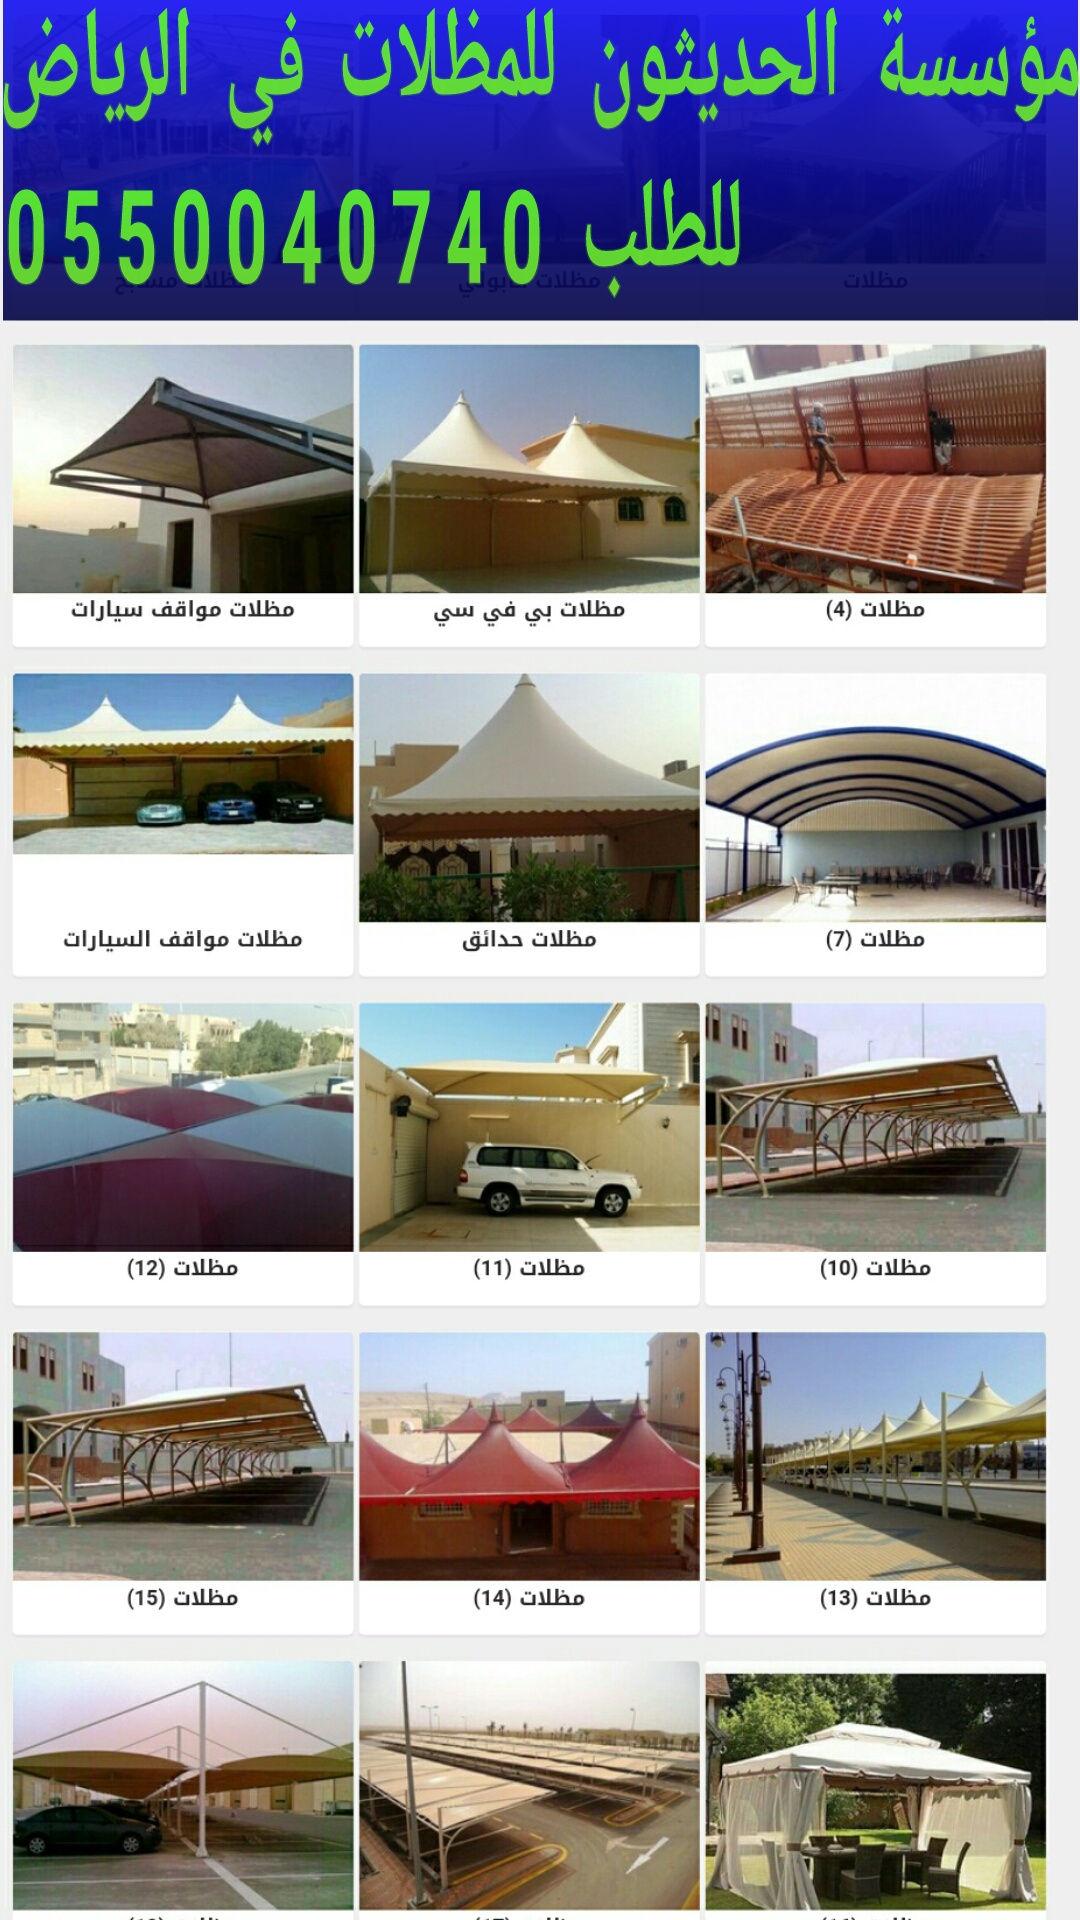 مظلات مواقف سيارات بالرياض 0550040740 مؤسسة الحديثون مظلات حدائق في الرياض P_1197hlnoz0